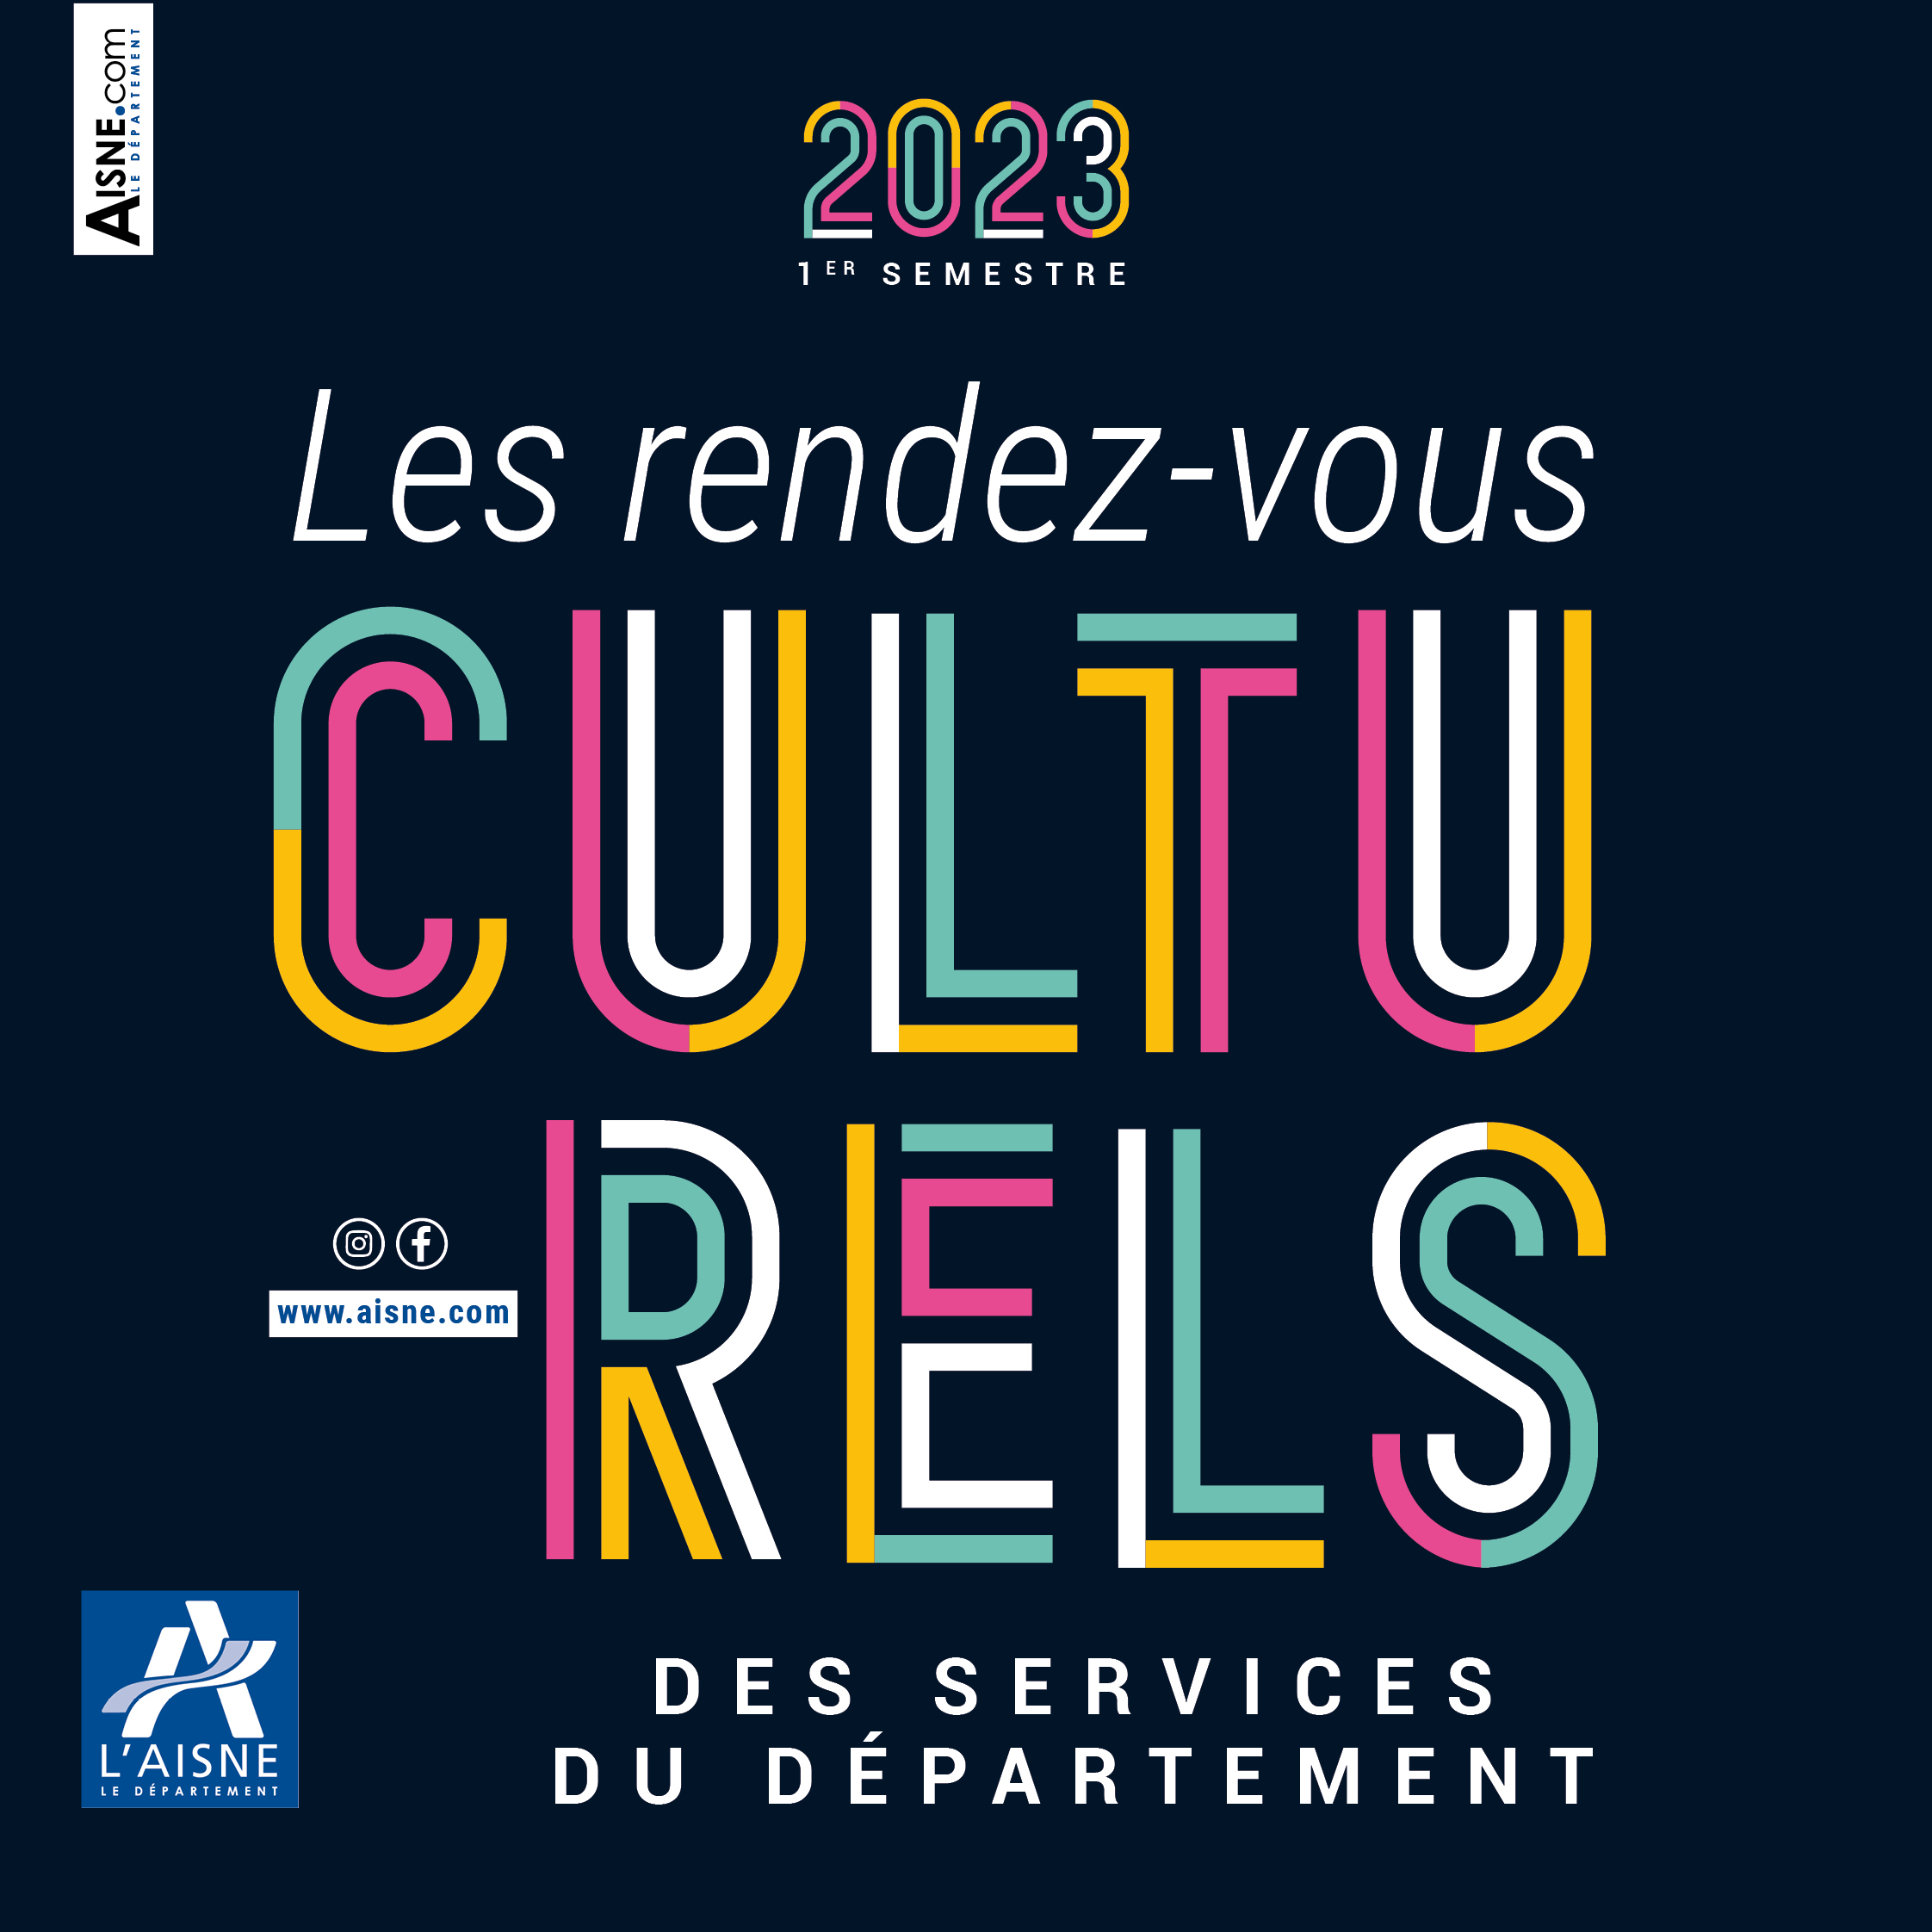 Les rendez-vous culturels des services du département, 1er semestre 2023